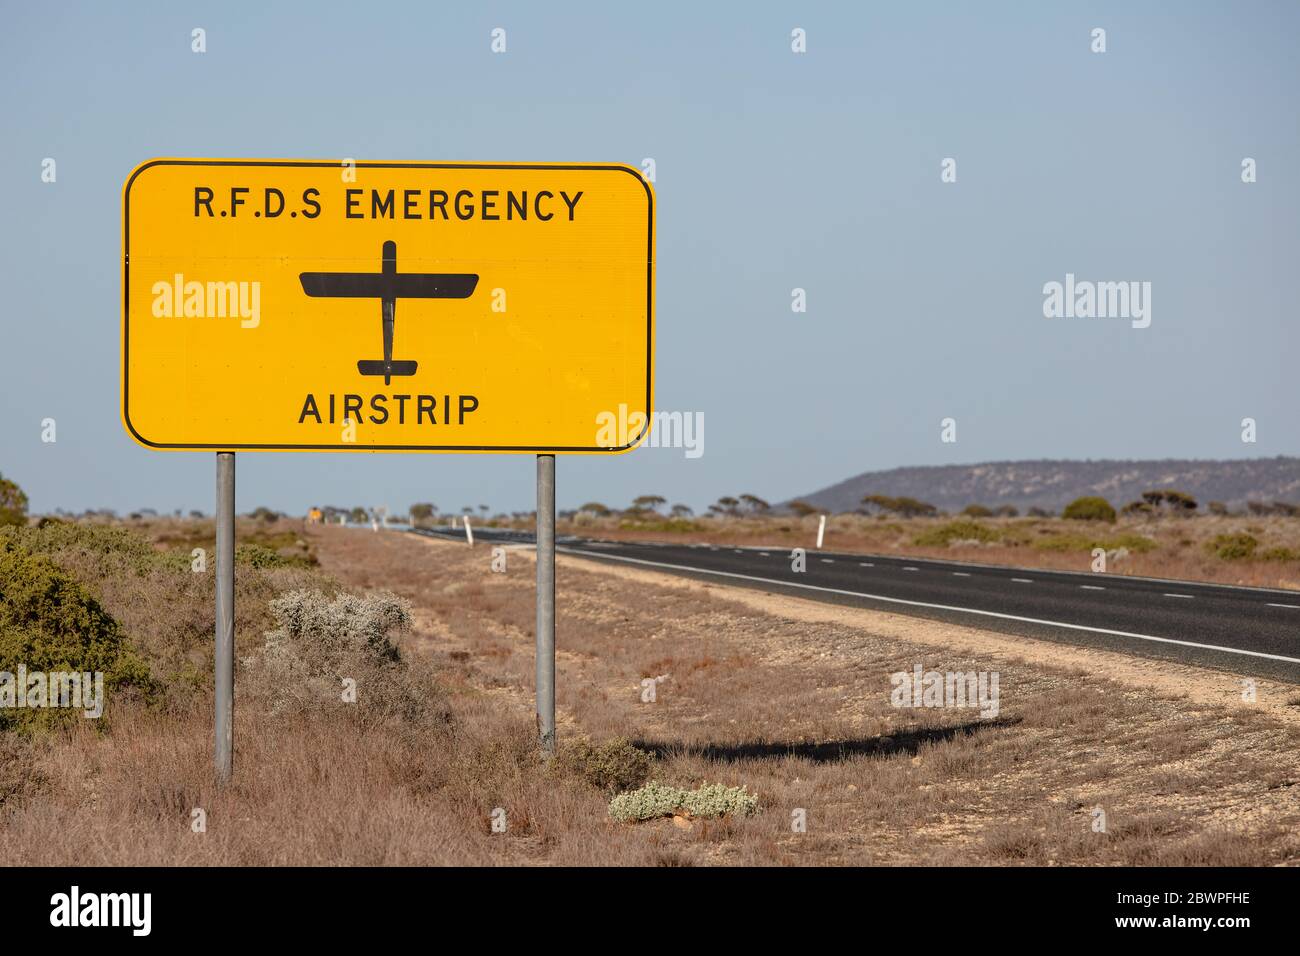 Le panneau du service d'urgence Royal Flying Doctor indiquant la route peut également servir de piste d'atterrissage en cas d'urgence médicale. Capturé en Australie occidentale Banque D'Images